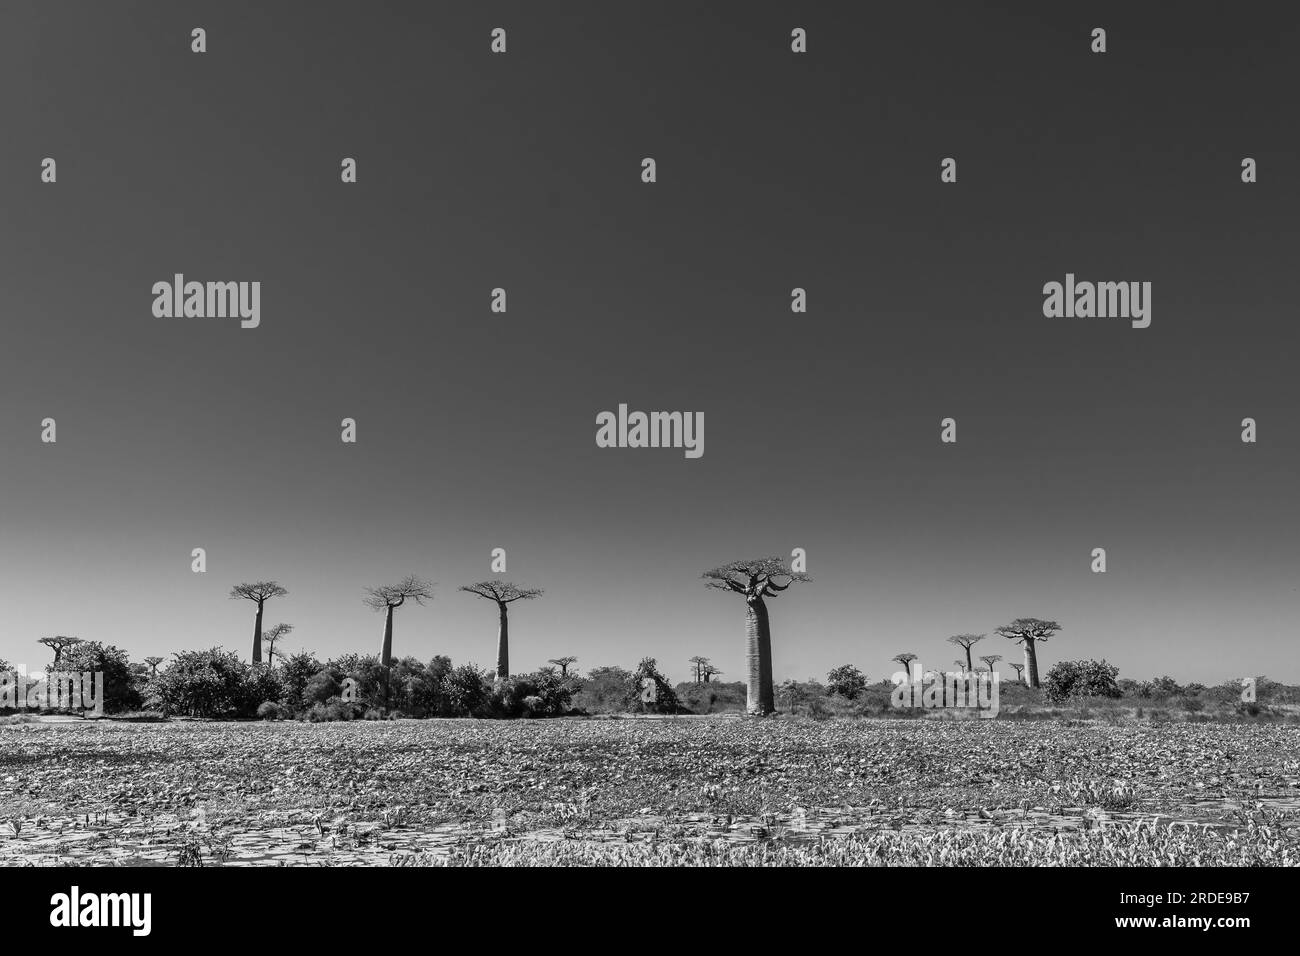 Belle allée de baobabs. Légendaire avenue des arbres Baobab à Morondava. Emblématique géant endémique de Madagascar. Forêt unique, noir blanc Banque D'Images